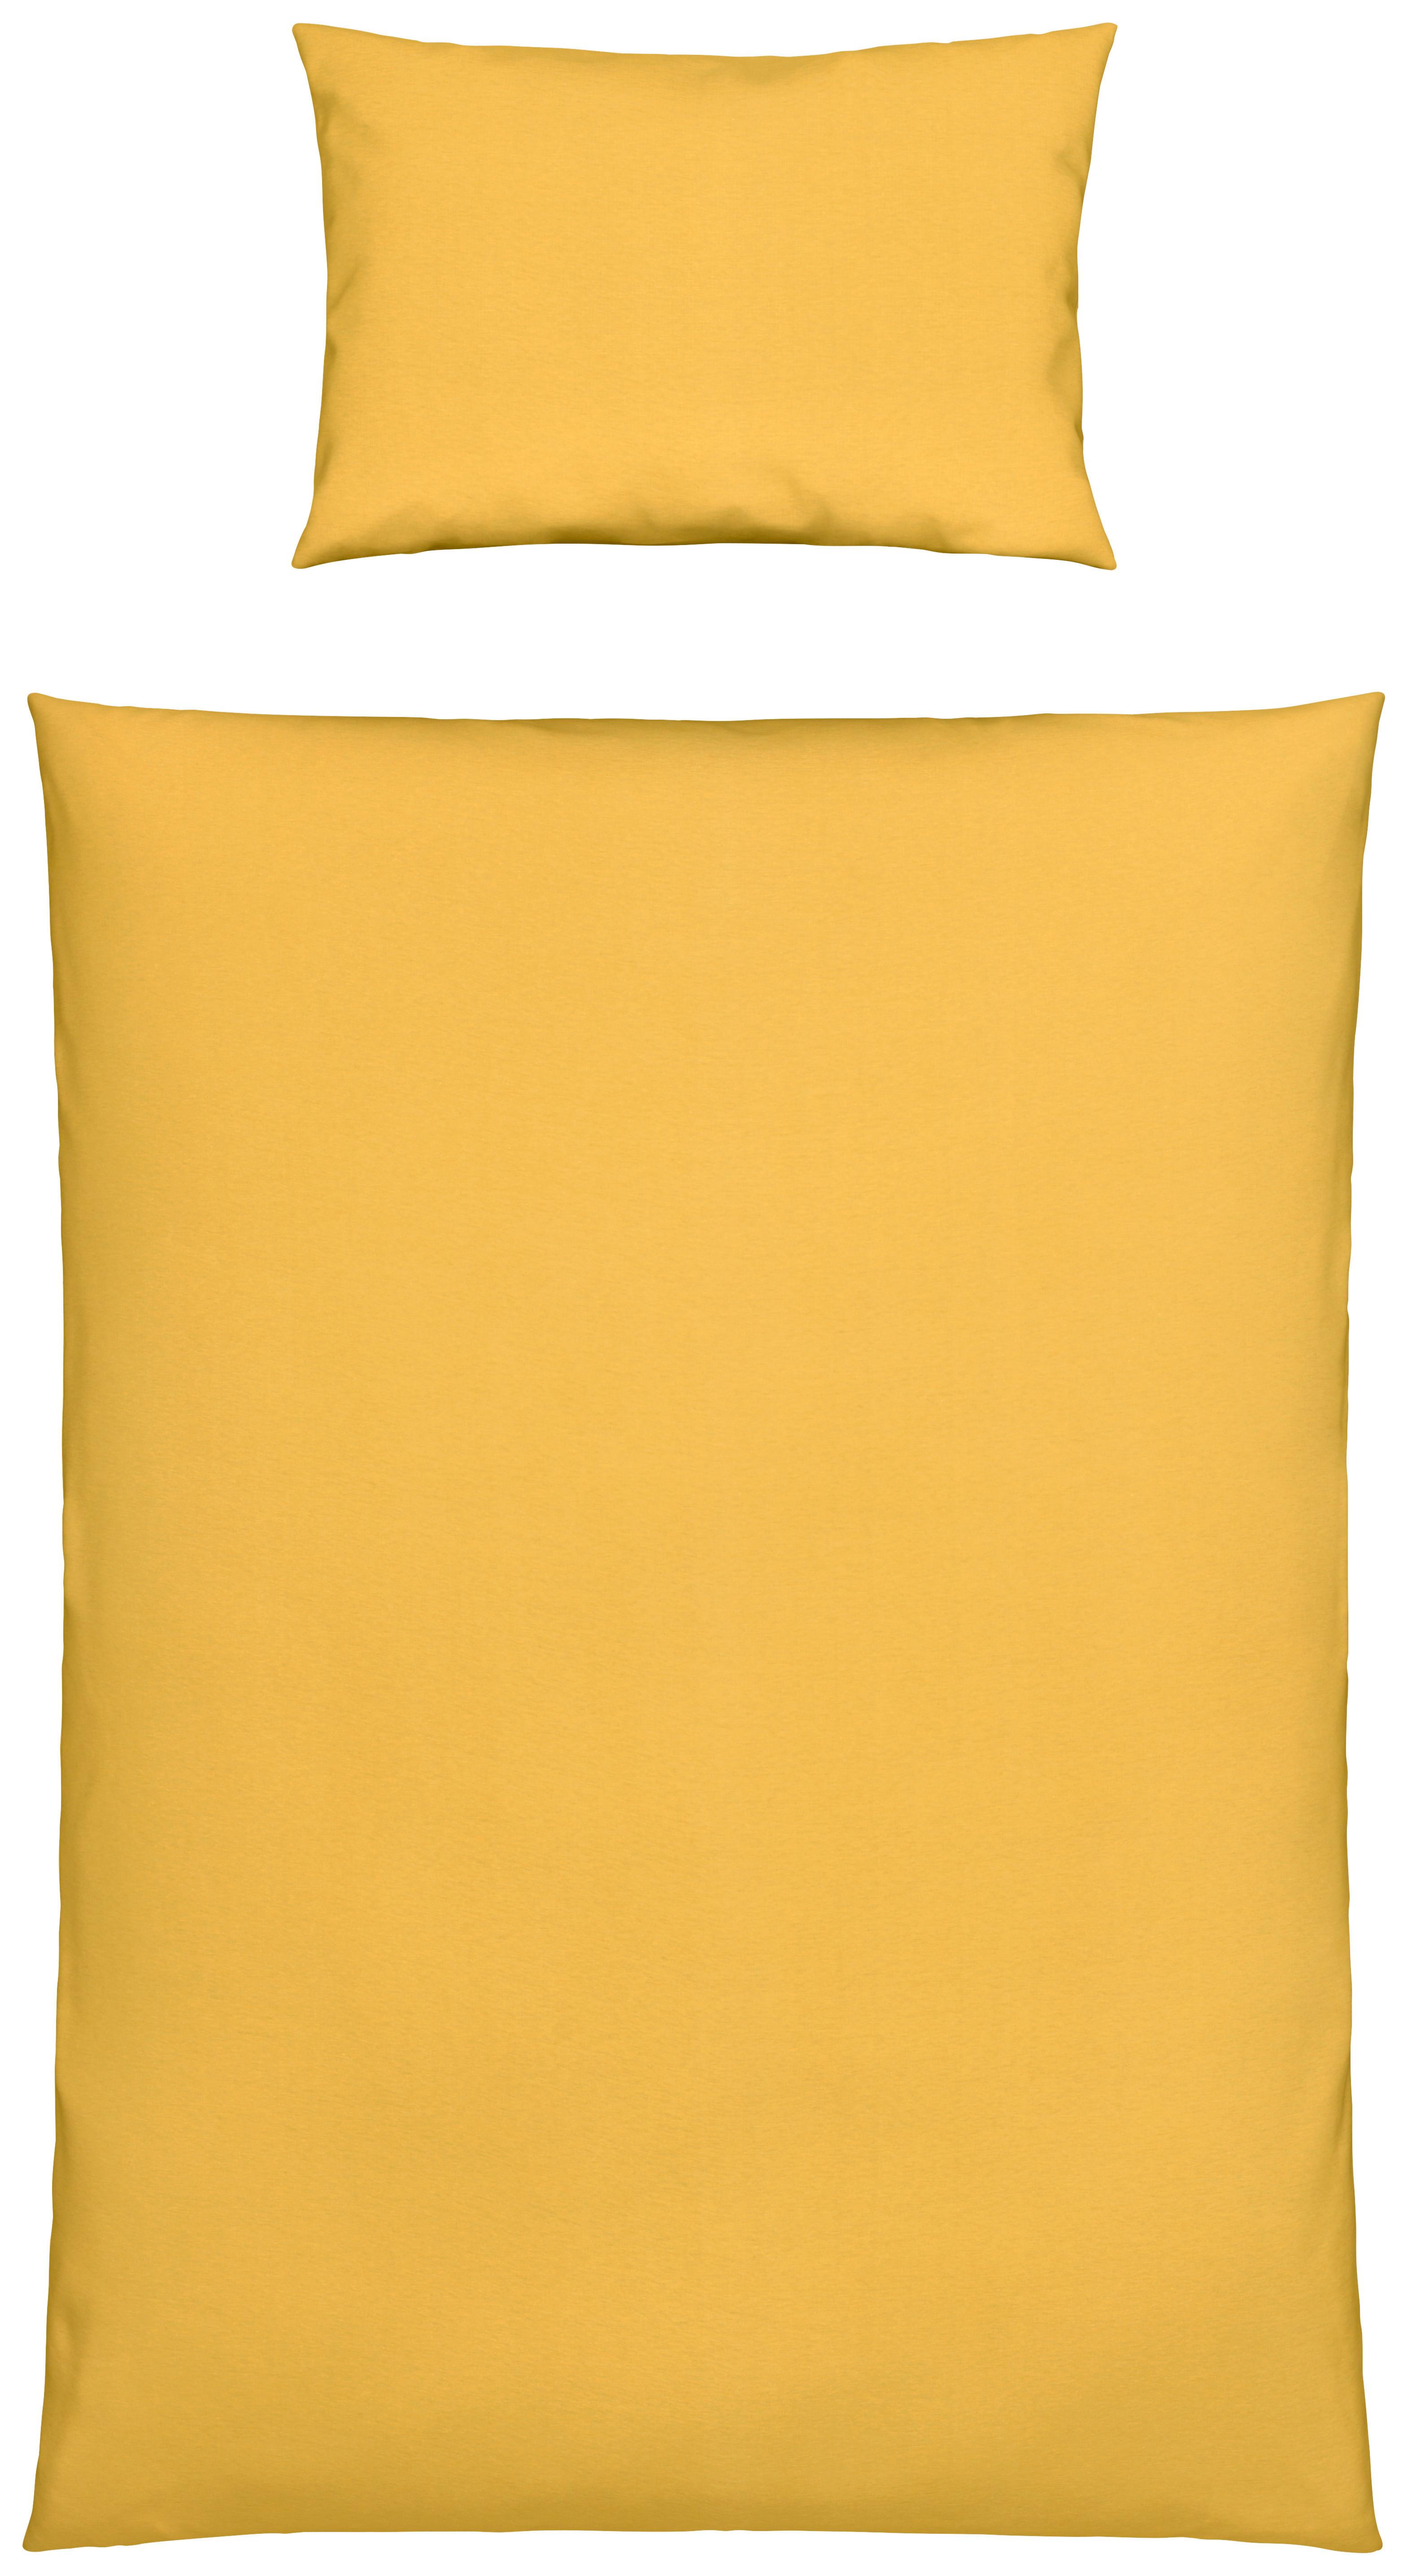 Detská Posteľná Bielizeň Toni, 100/135cm, Žltá - žltá, Moderný, textil (100/135cm) - Modern Living